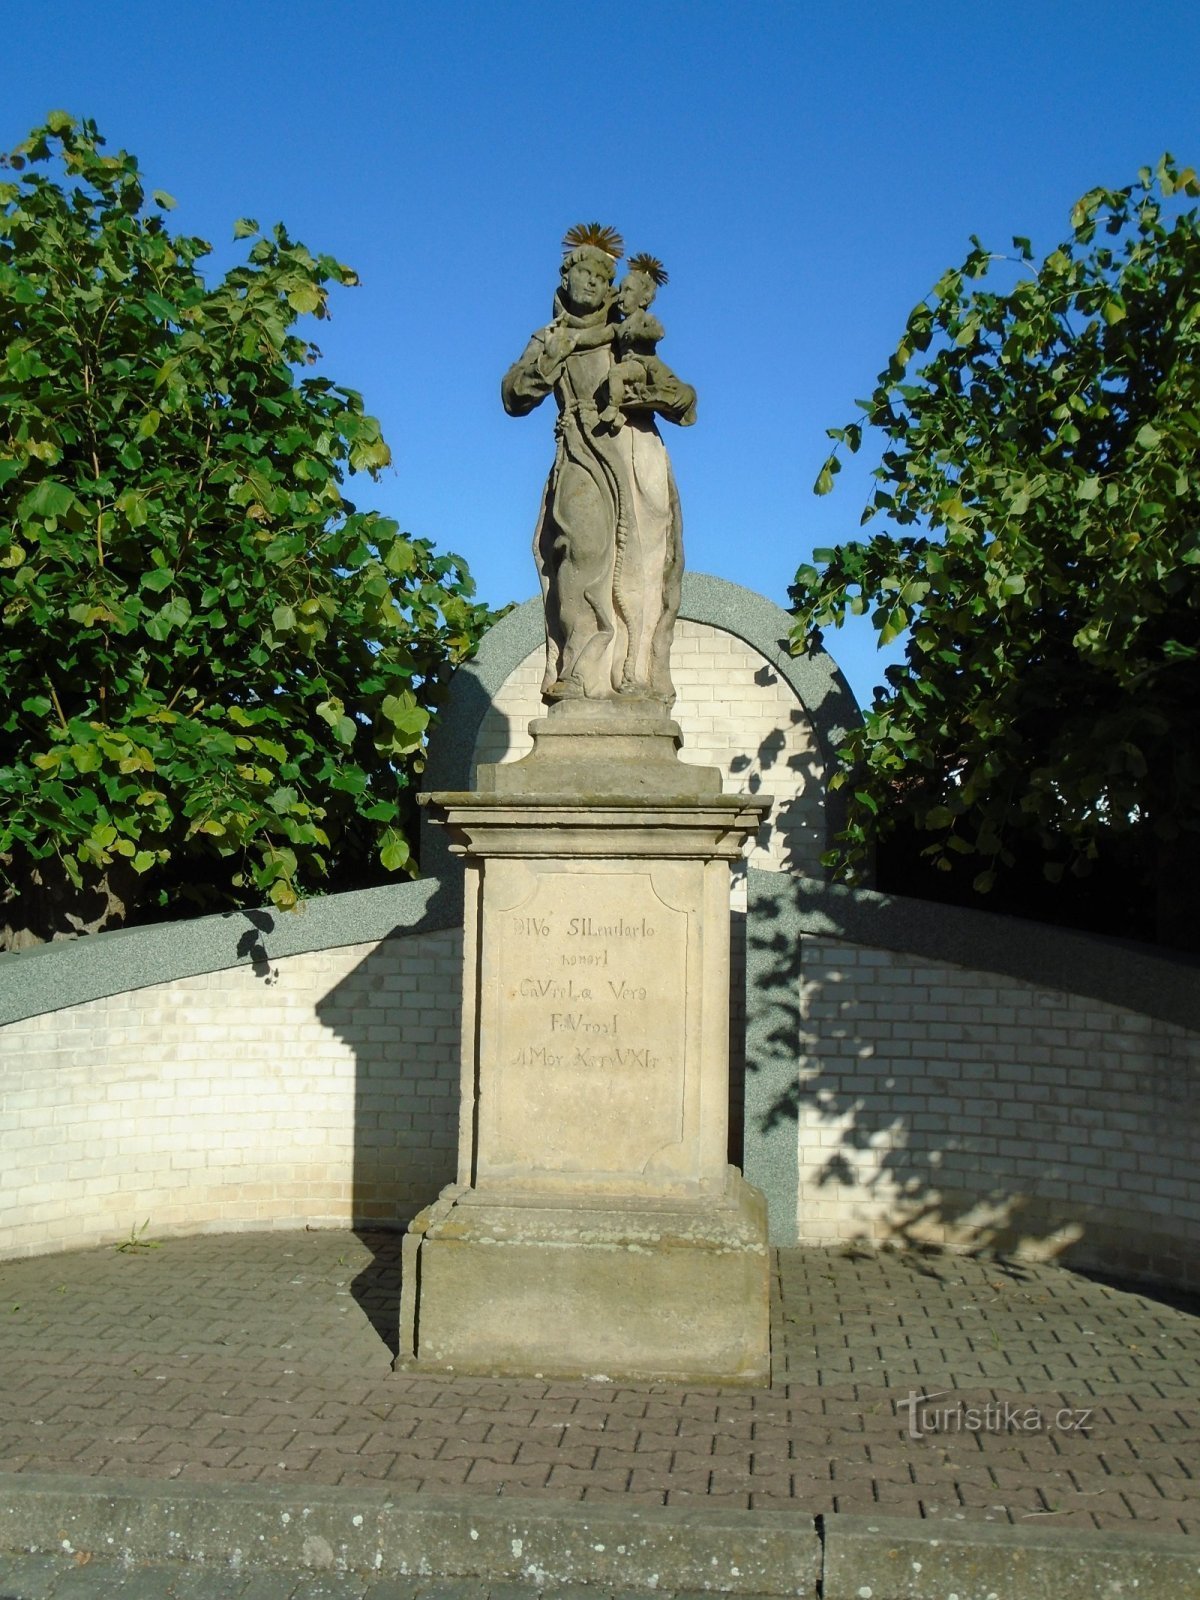 Staty av St. Antonius av Padua (våtskägg)